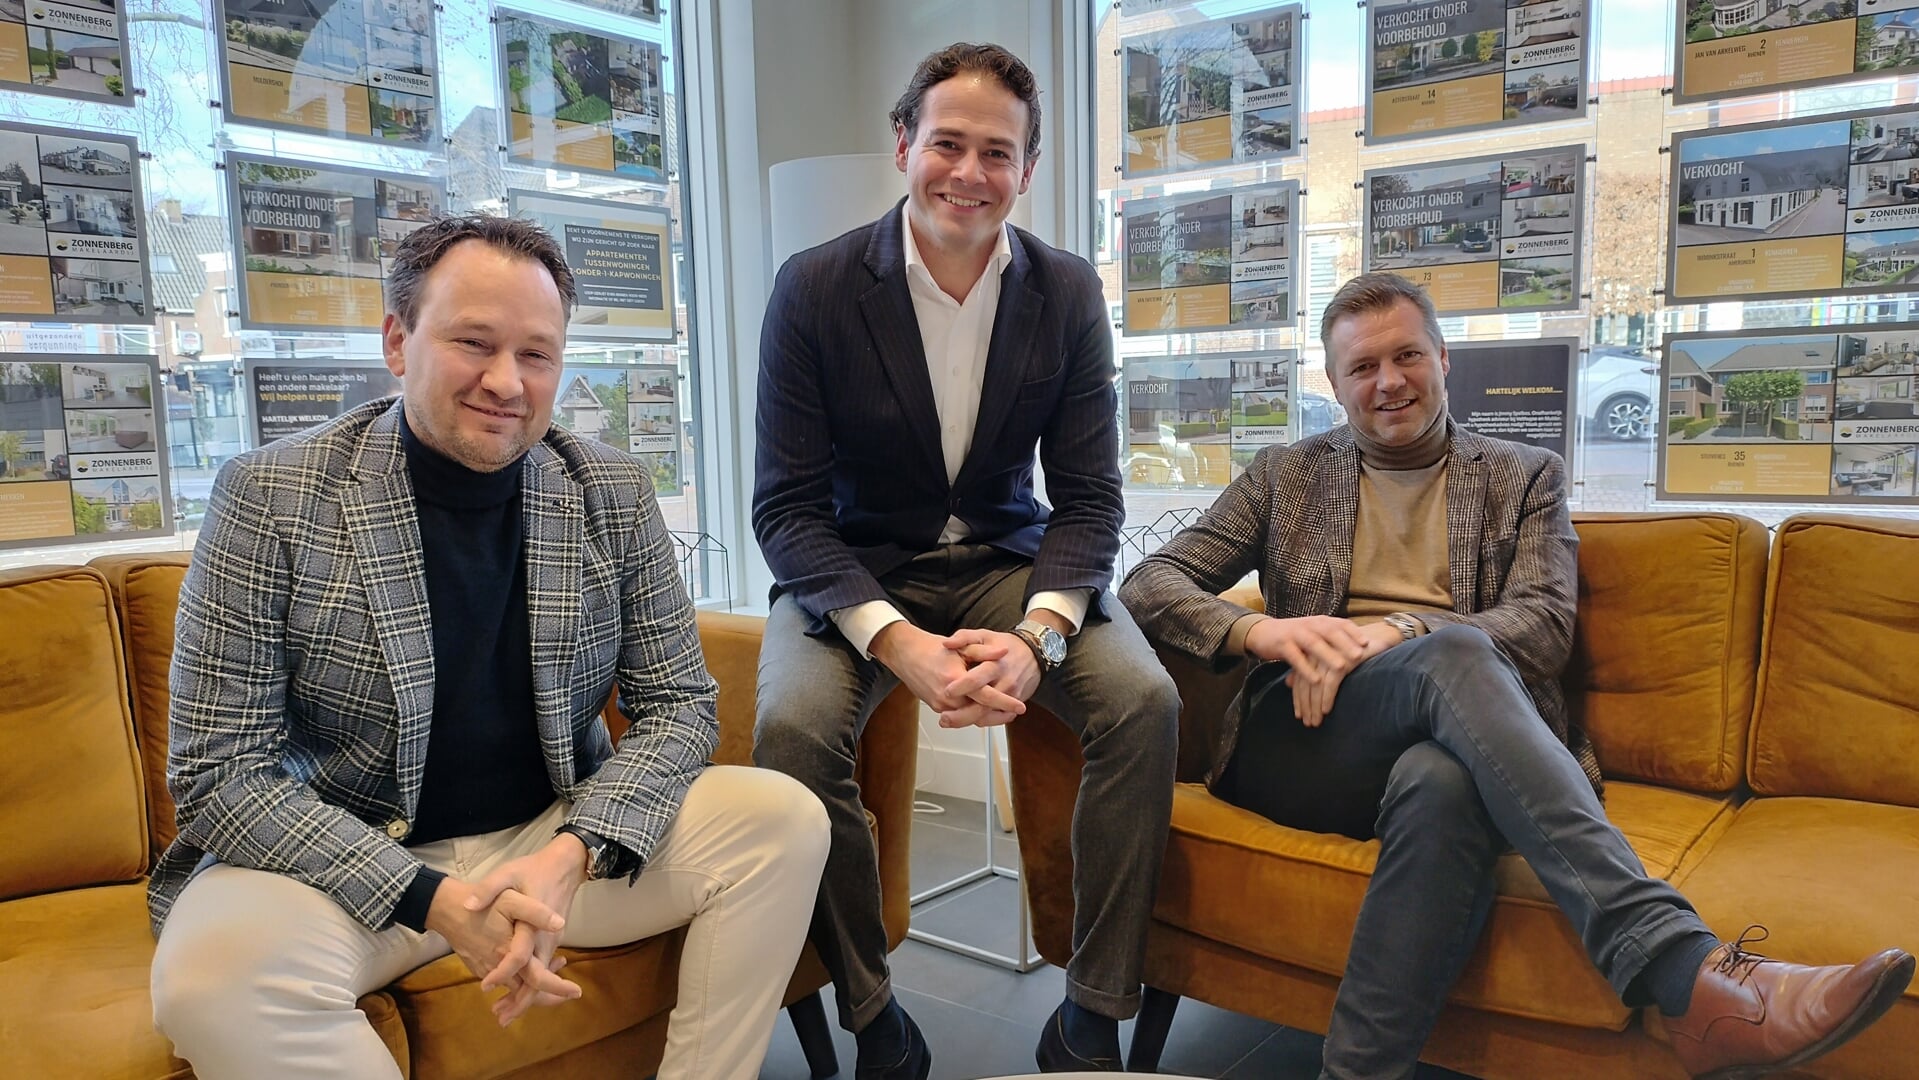 Makelaars Gerben Keuning, Jordy van Kreel en Wistik Zonnenberg zijn enthousiast over keurmerk Eerlijk Bieden.